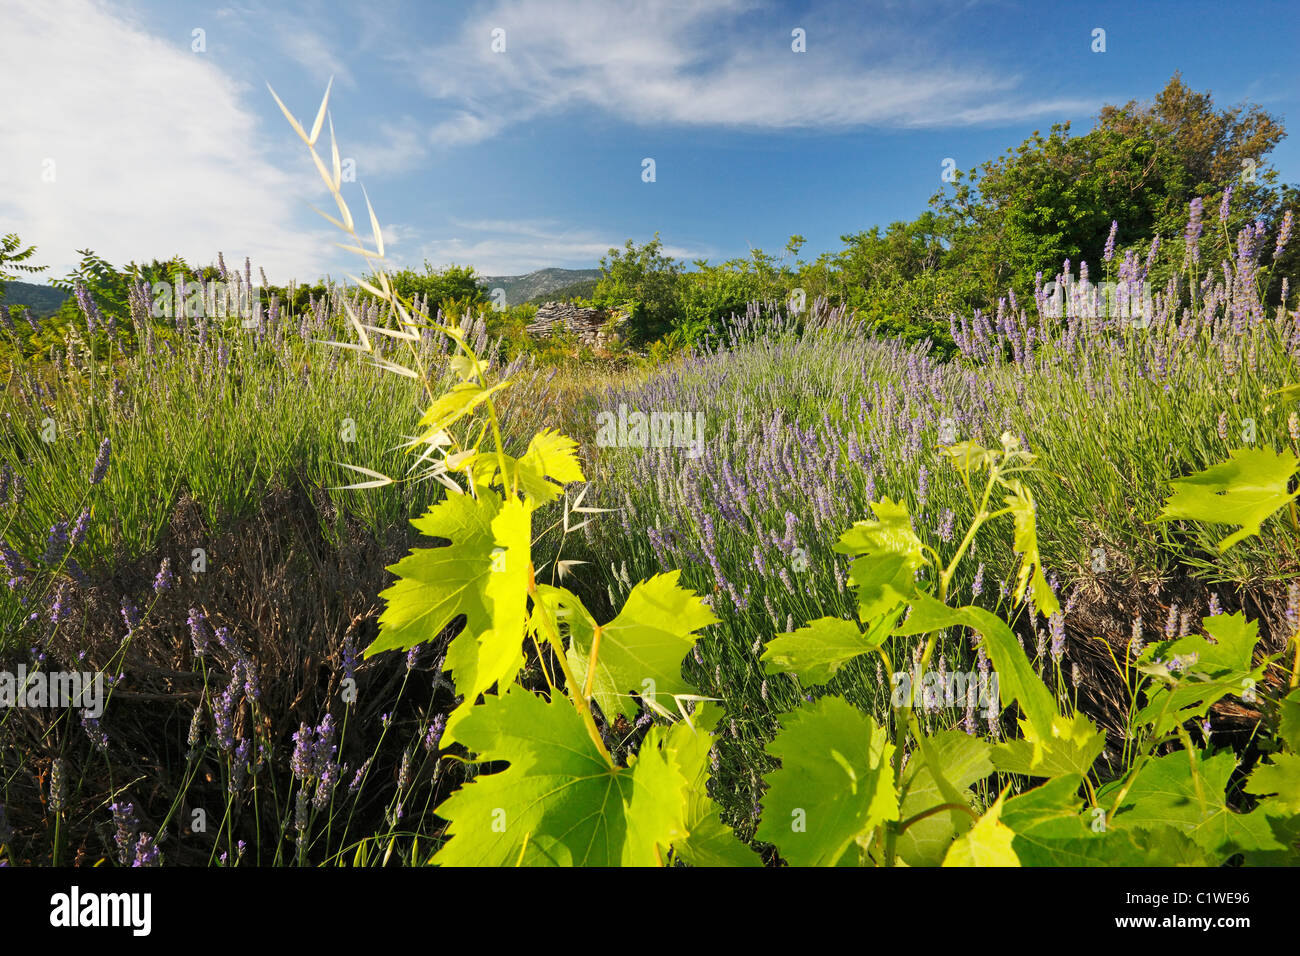 Vineyard in lavender field Stock Photo